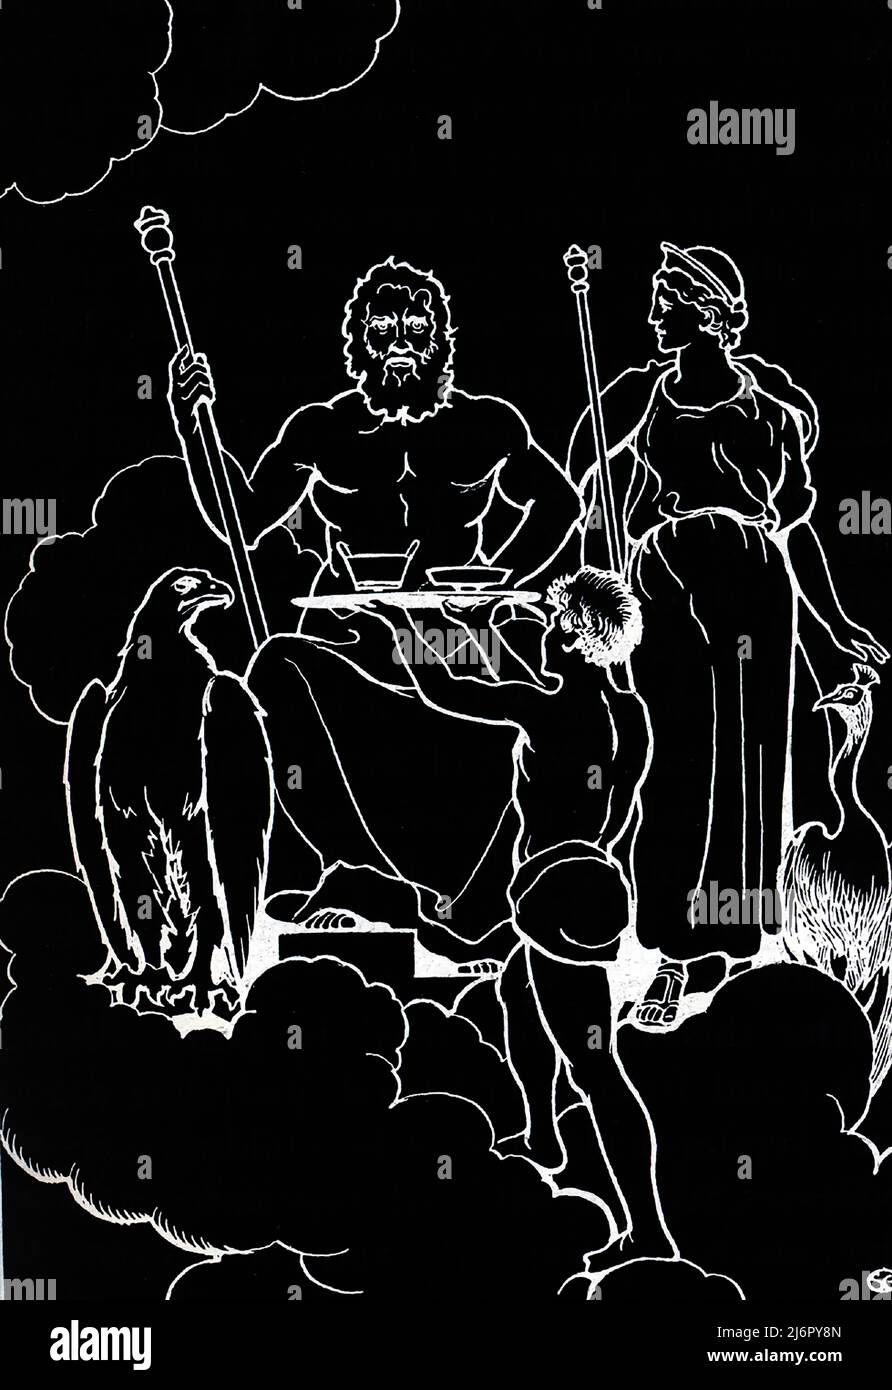 Giove, conosciuto anche come Giove, è il dio del cielo e del tuono, così come il re degli dei nella mitologia antica romana. Giove è il Dio più alto del pantheon romano. Giove fu considerata la divinità principale della religione di stato romana durante l'era repubblicana e imperiale fino a quando il cristianesimo divenne la religione dominante. Qui sul suo trono sul Monte Olimpo, ha con sé la sua aquila. L’aquila servì come messaggero personale di Giove. I miti hanno detto che un'aquila ha portato il giovane Ganymede a Olympus, dove ha servito come il portabandiera degli dei. Giove era noto ai Greci come Zeus. Foto Stock